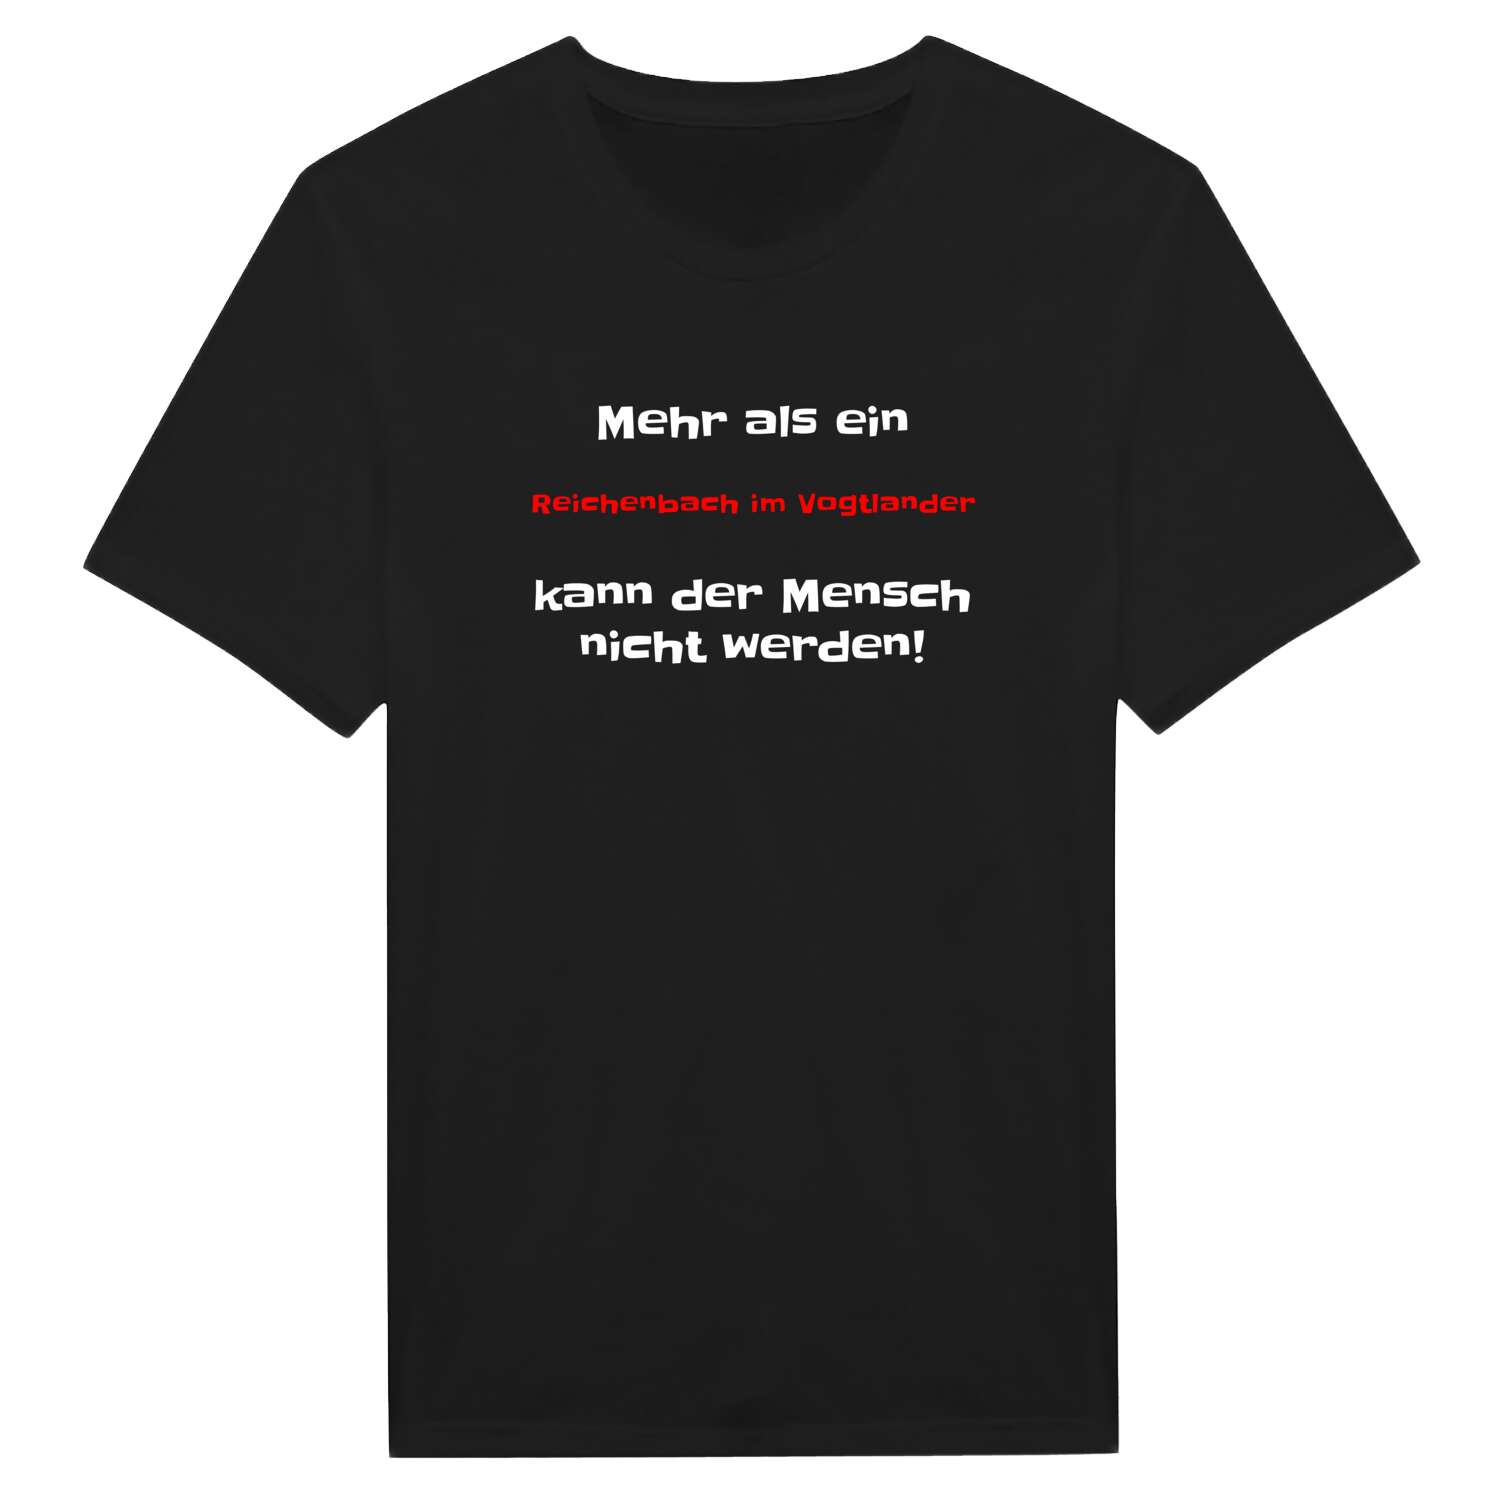 Reichenbach im Vogtland T-Shirt »Mehr als ein«